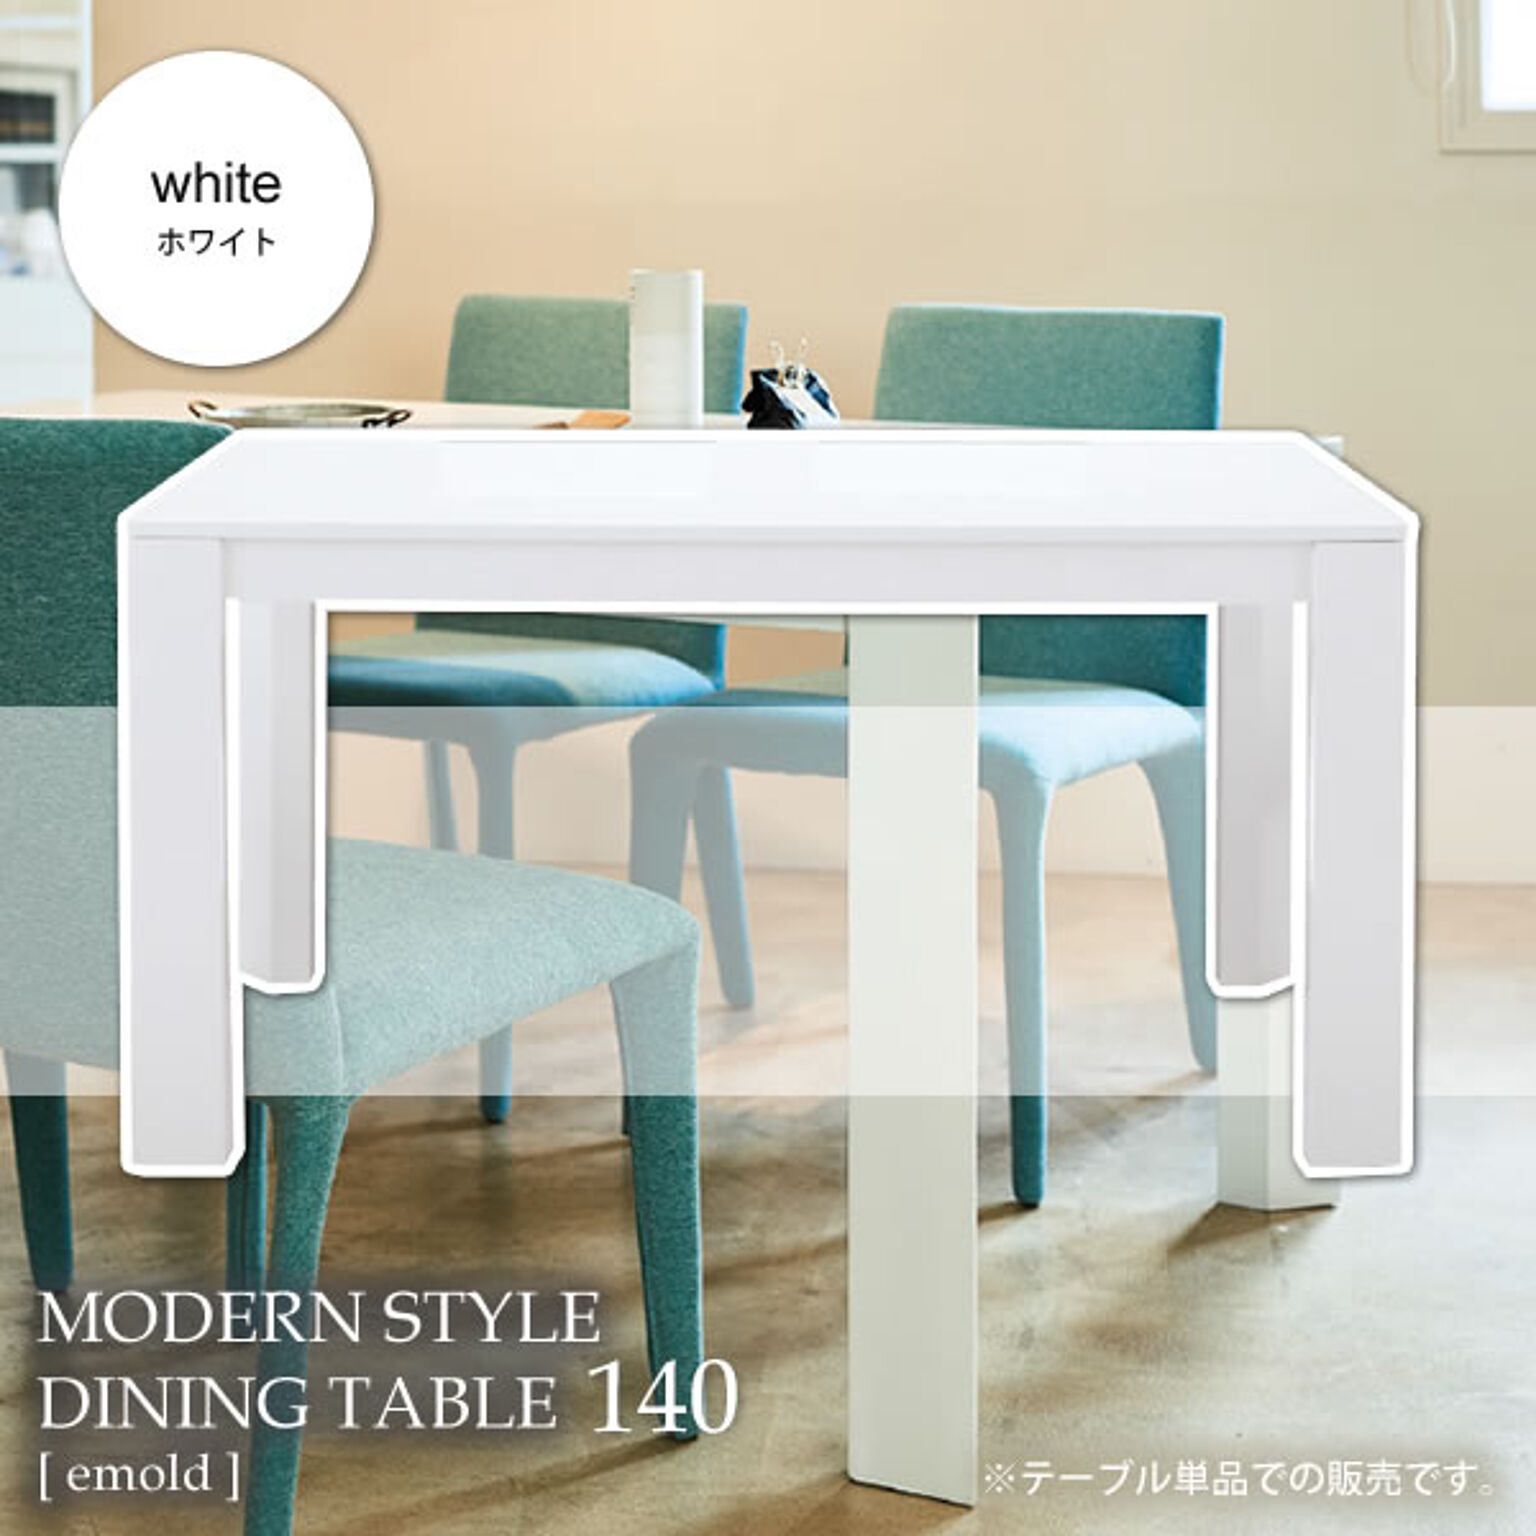 ホワイト ダイニングテーブル 幅140 机 つくえ【emold】 ホワイト(white) (アーバン) 北欧 カフェ シンプル モダン クール 